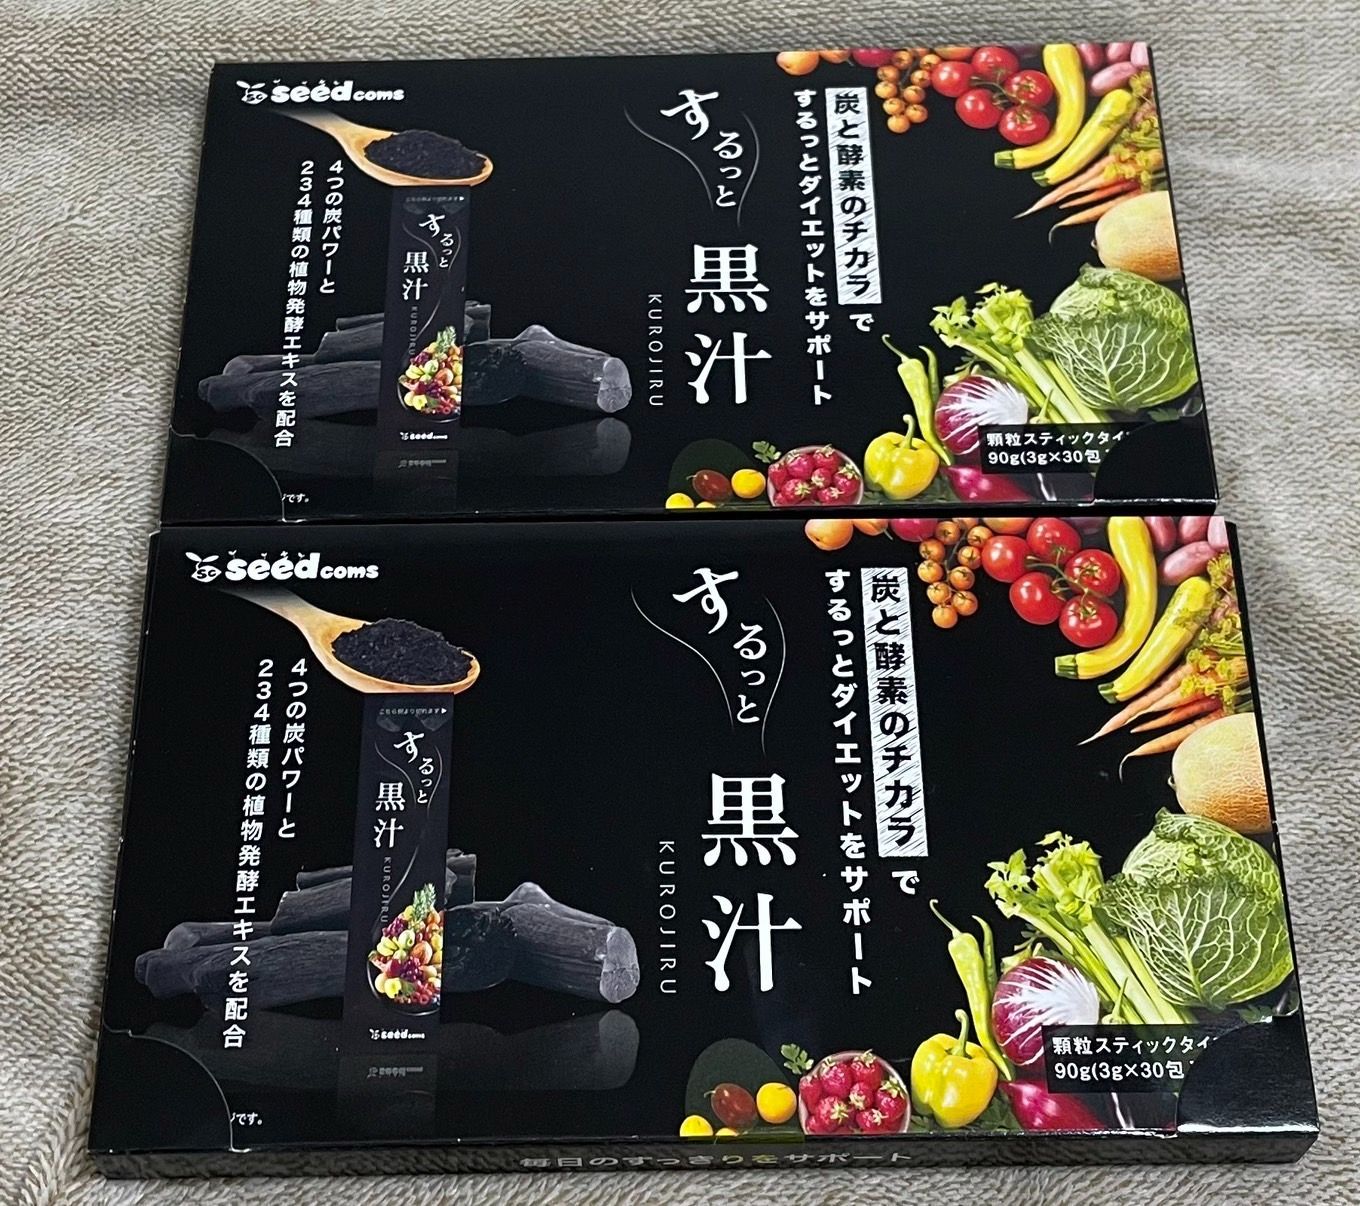 黒汁　KUROJIRU　3g×30包×4箱